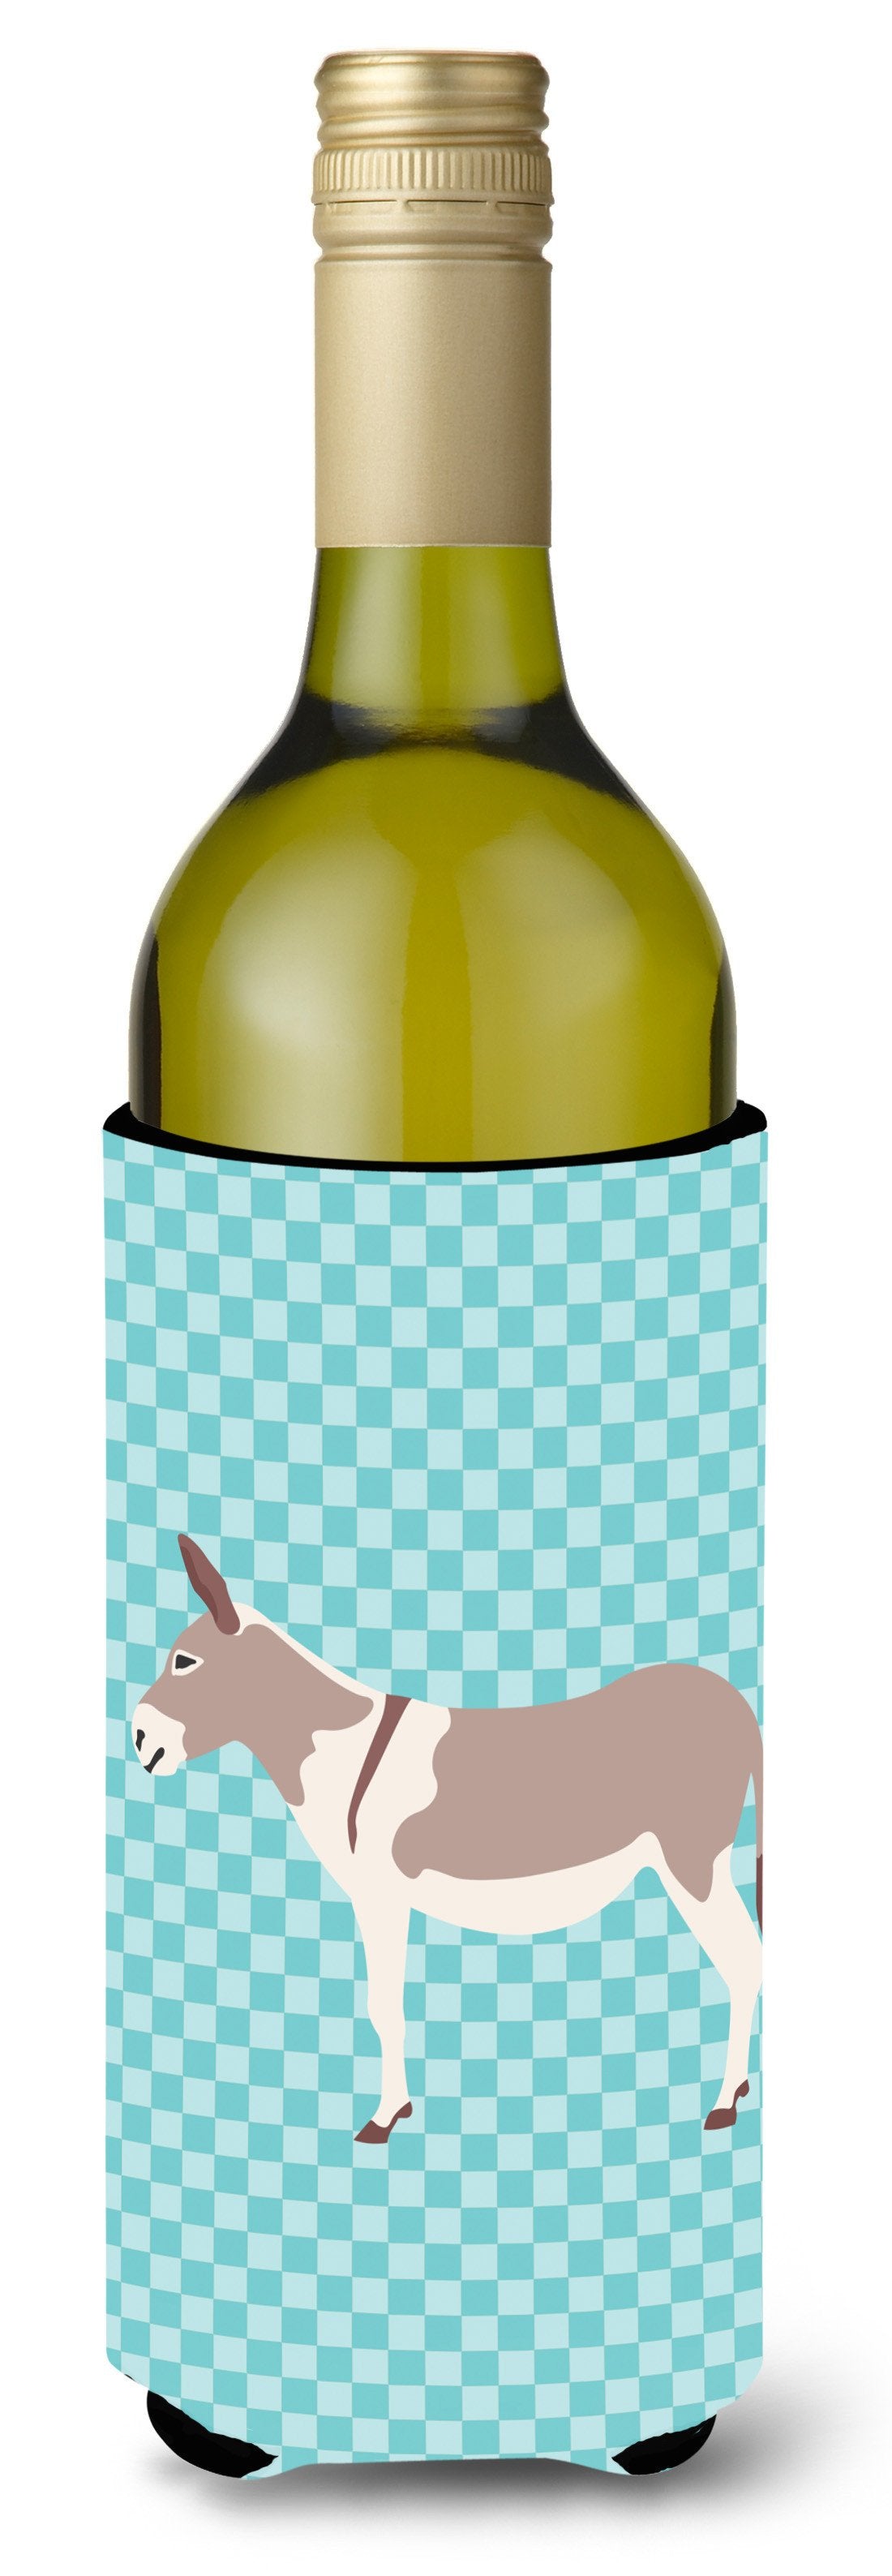 Australian Teamster Donkey Blue Check Wine Bottle Beverge Insulator Hugger BB8020LITERK by Caroline's Treasures